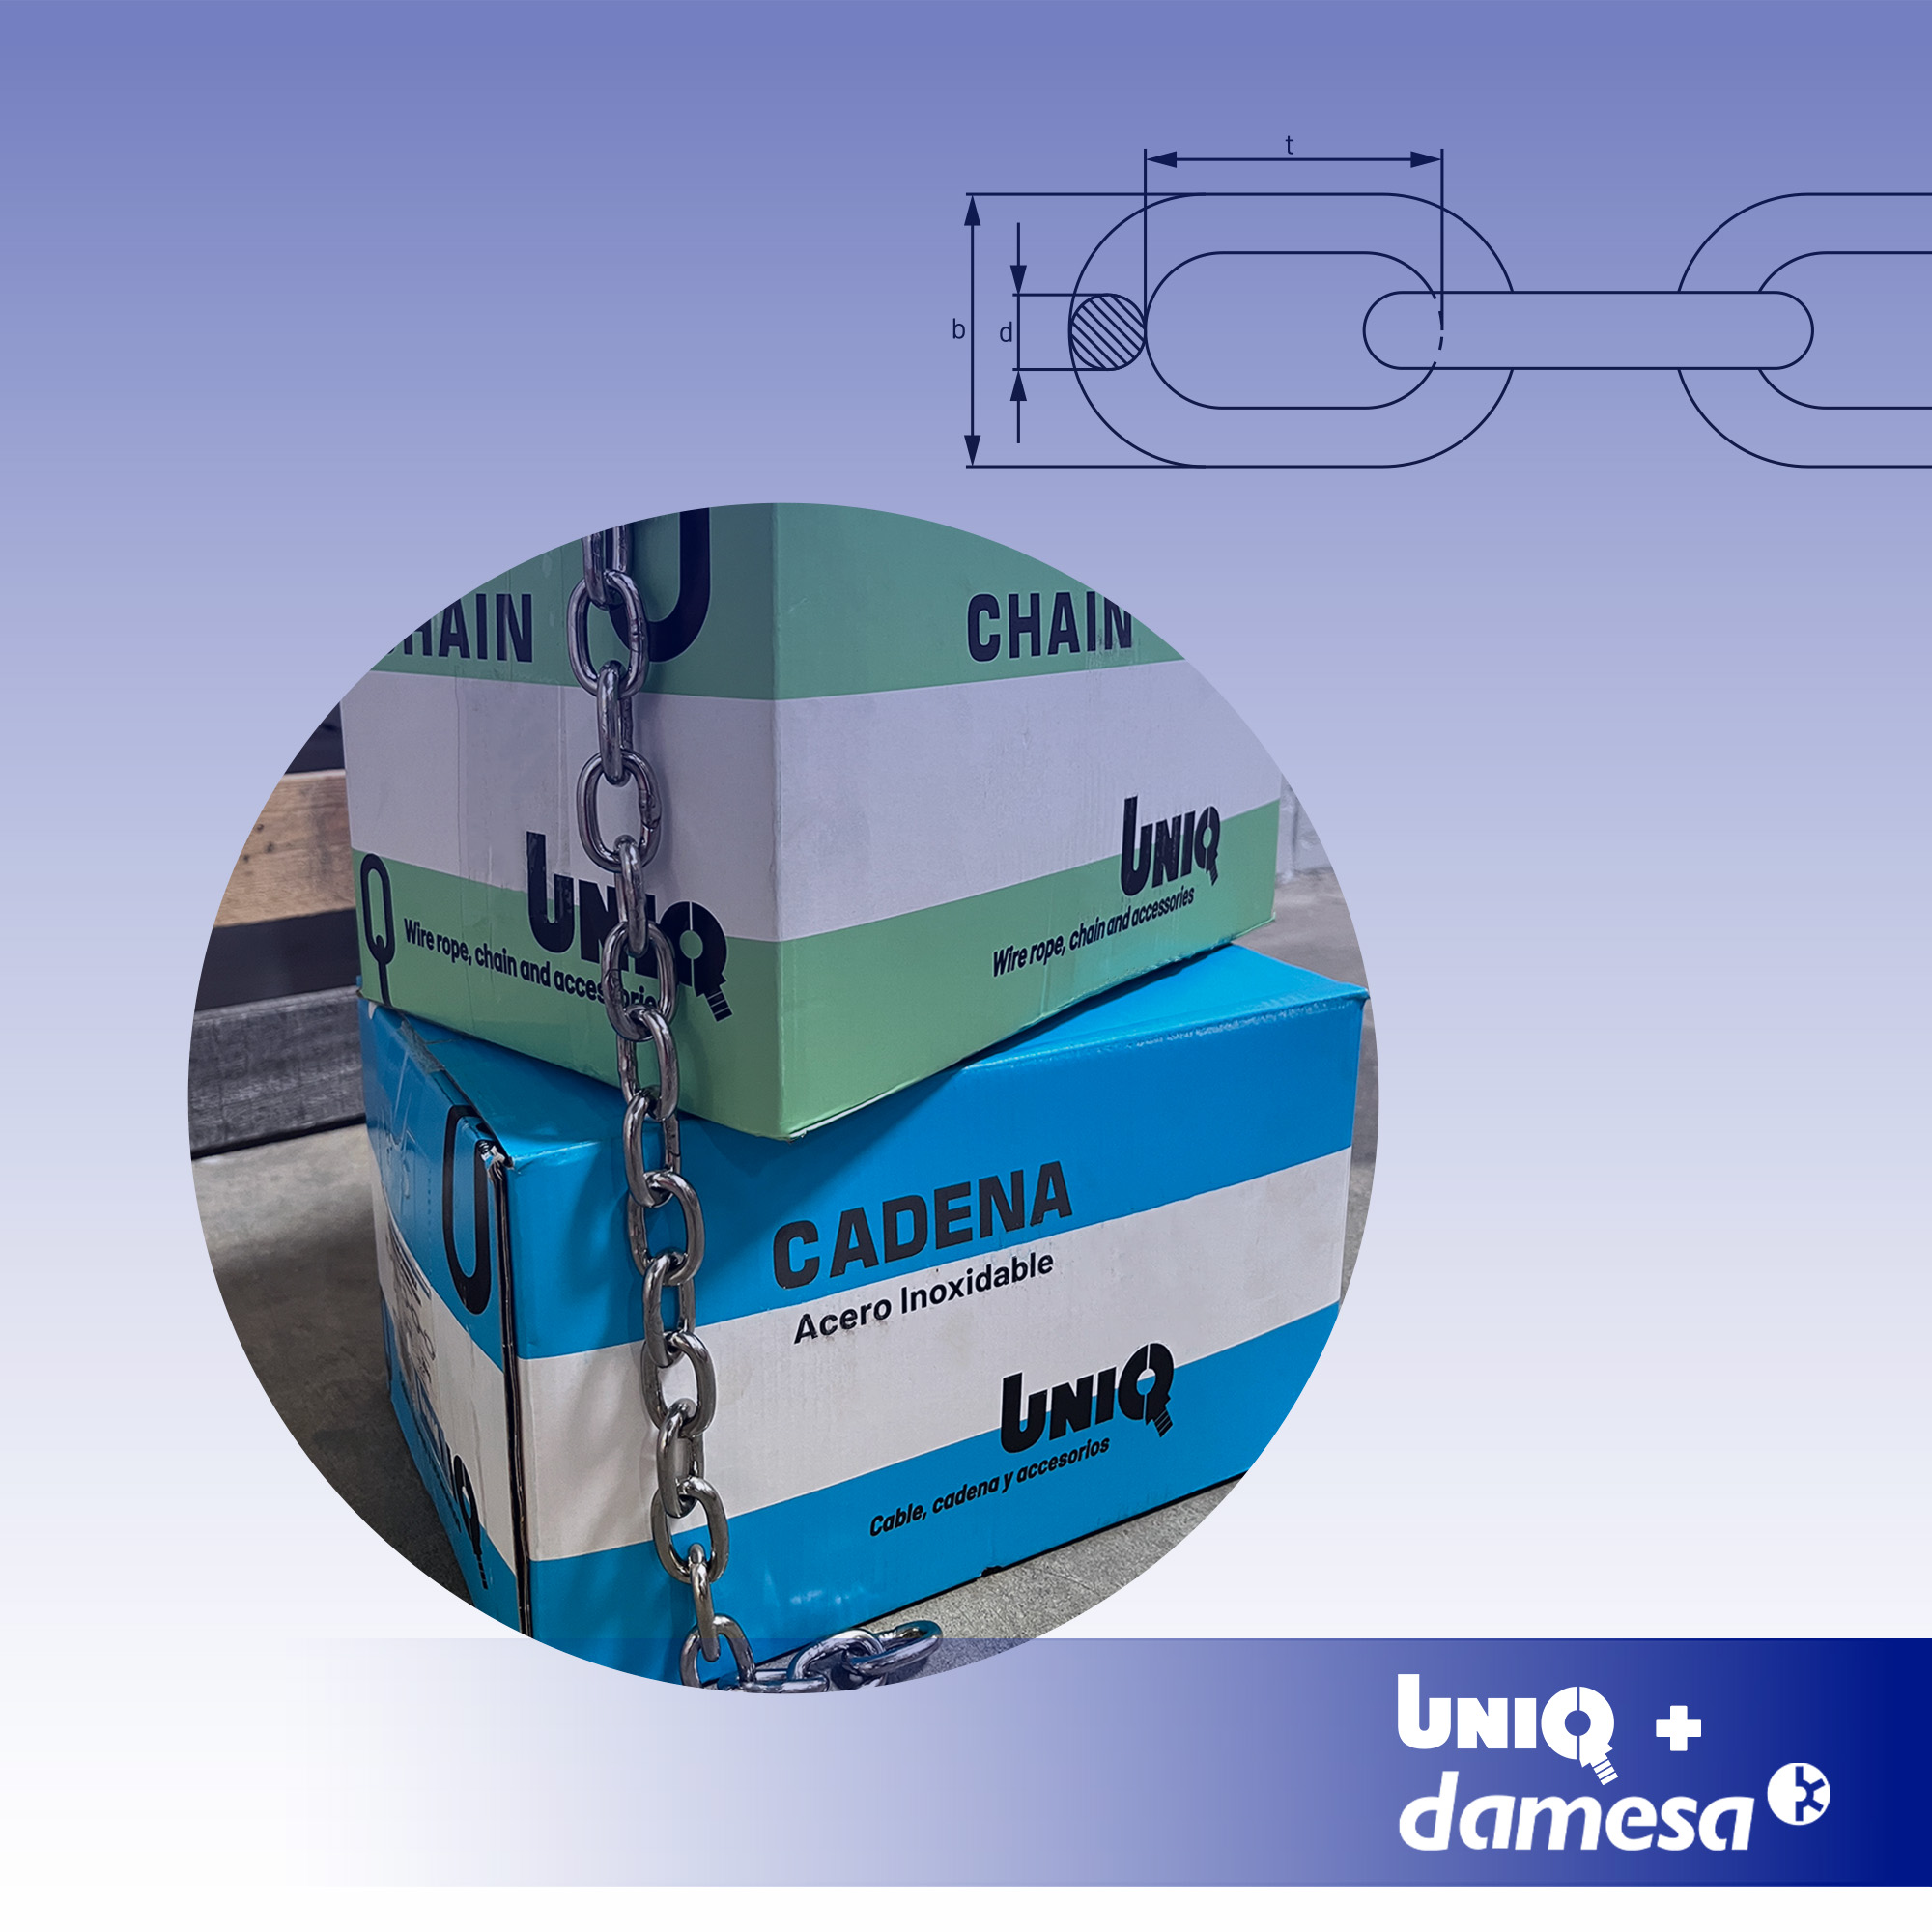 UNIQ DIN 5685/A chain